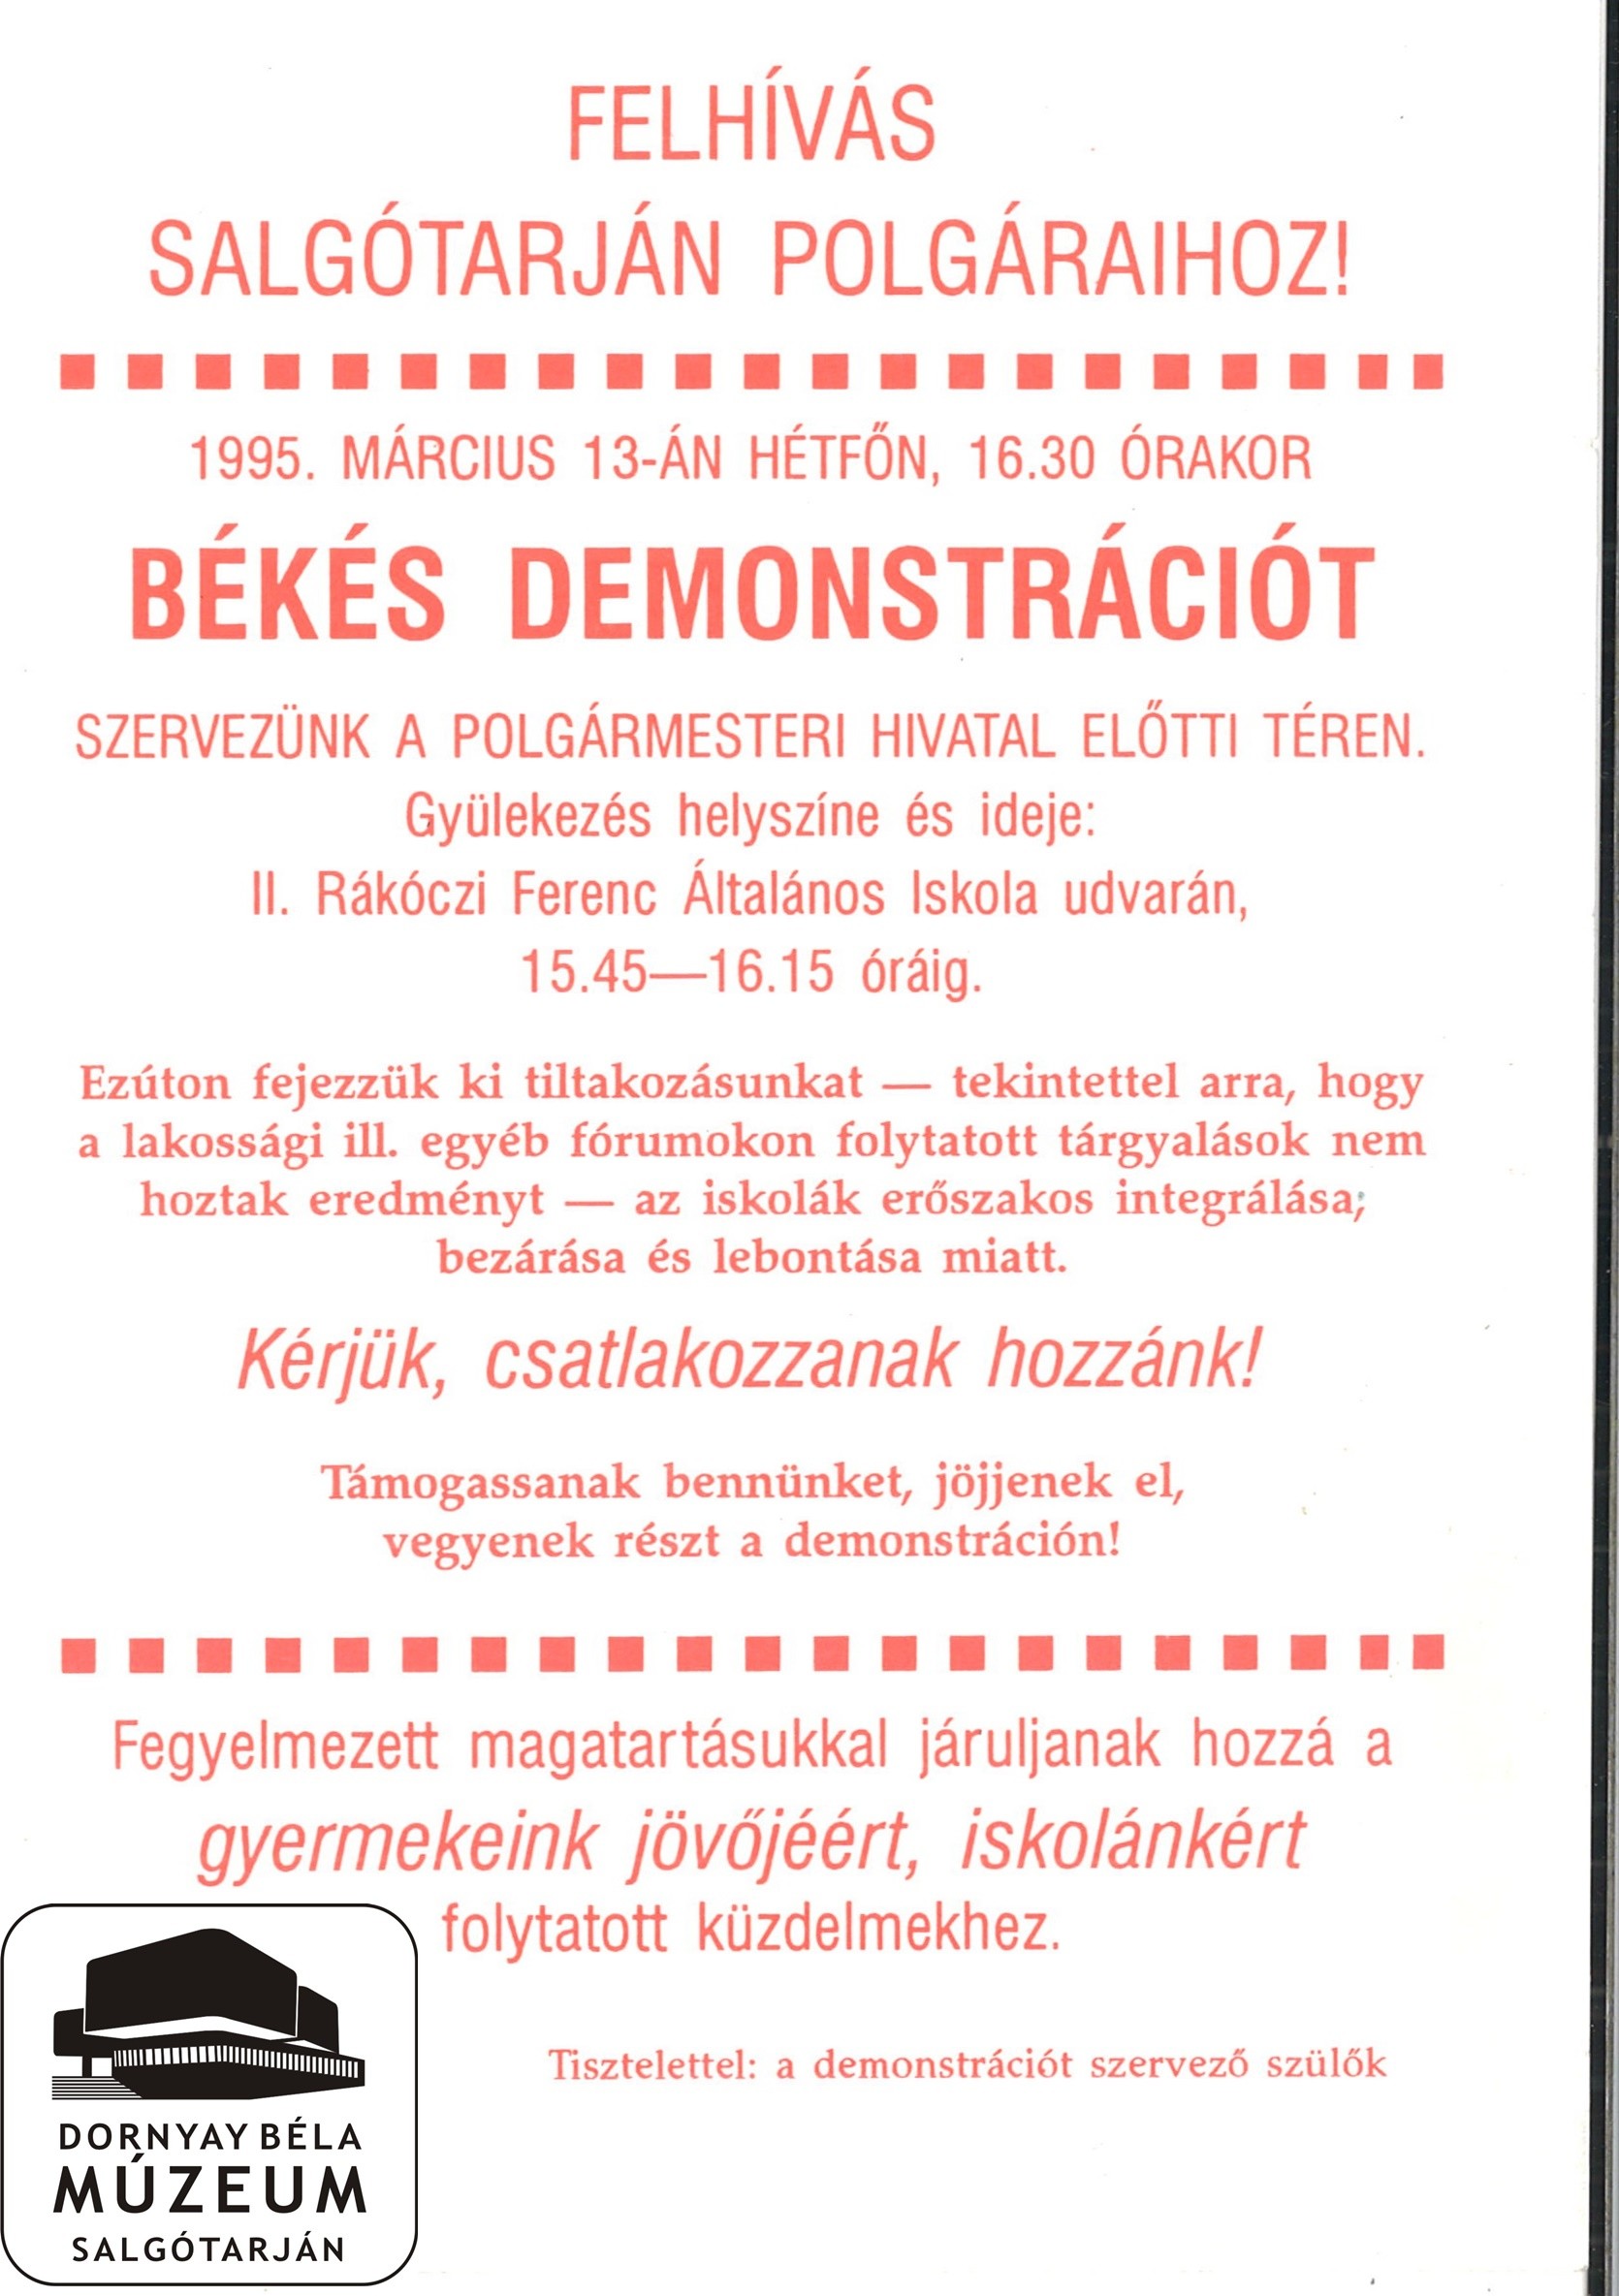 Felhívás Salgótarján polgáraihoz, békés demonstrációra az iskola bezárások ellen (Dornyay Béla Múzeum, Salgótarján CC BY-NC-SA)